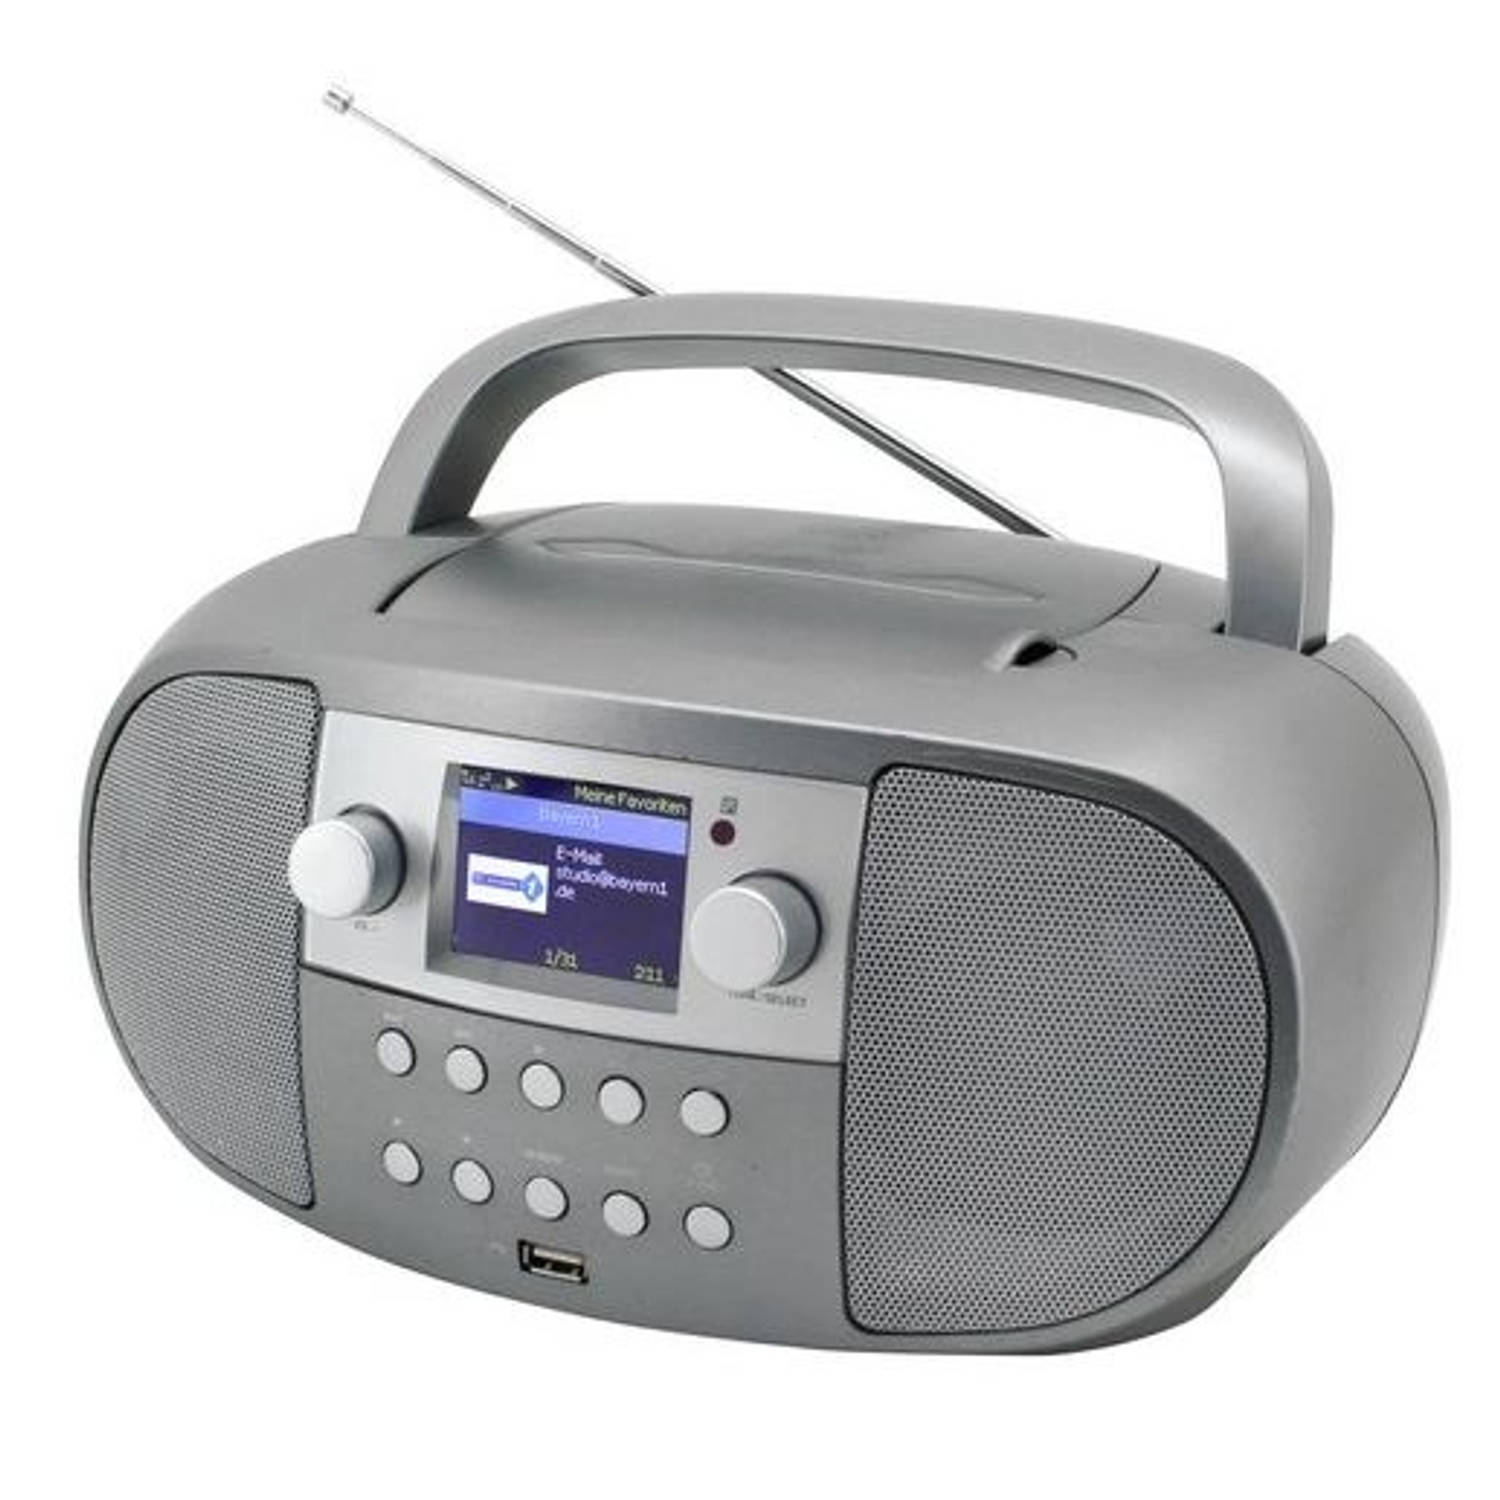 Soundmaster SCD7600TI - Boombox met Internet-/DAB+/FM-radio, CD, USB en Bluetooth, titan